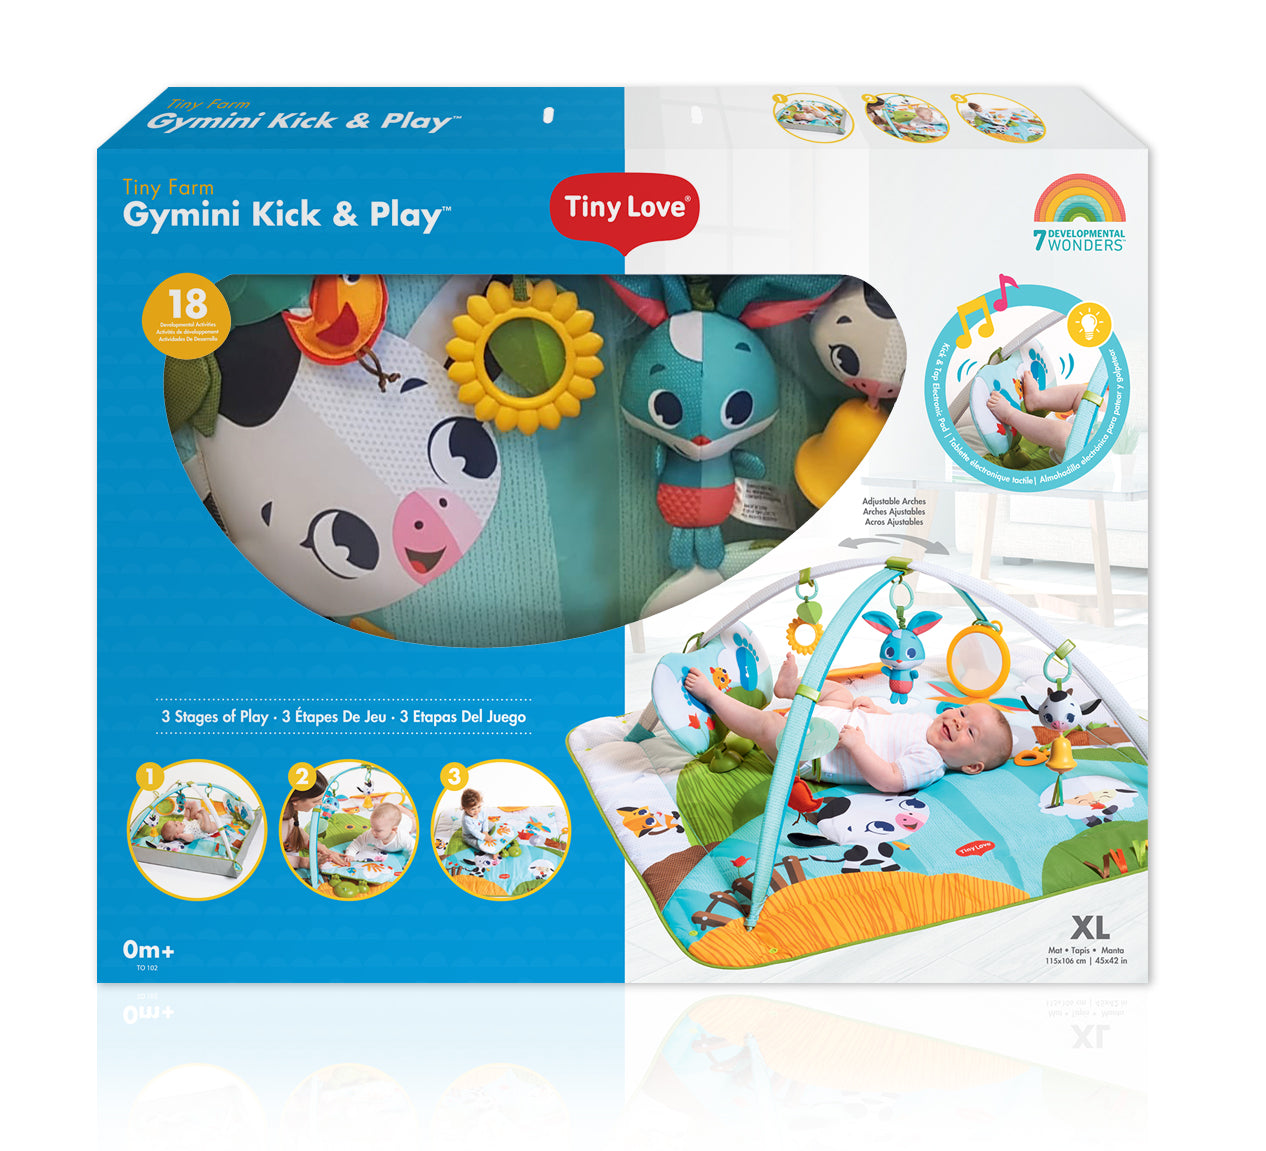 Gymini Kick & Play - Tiny Farm